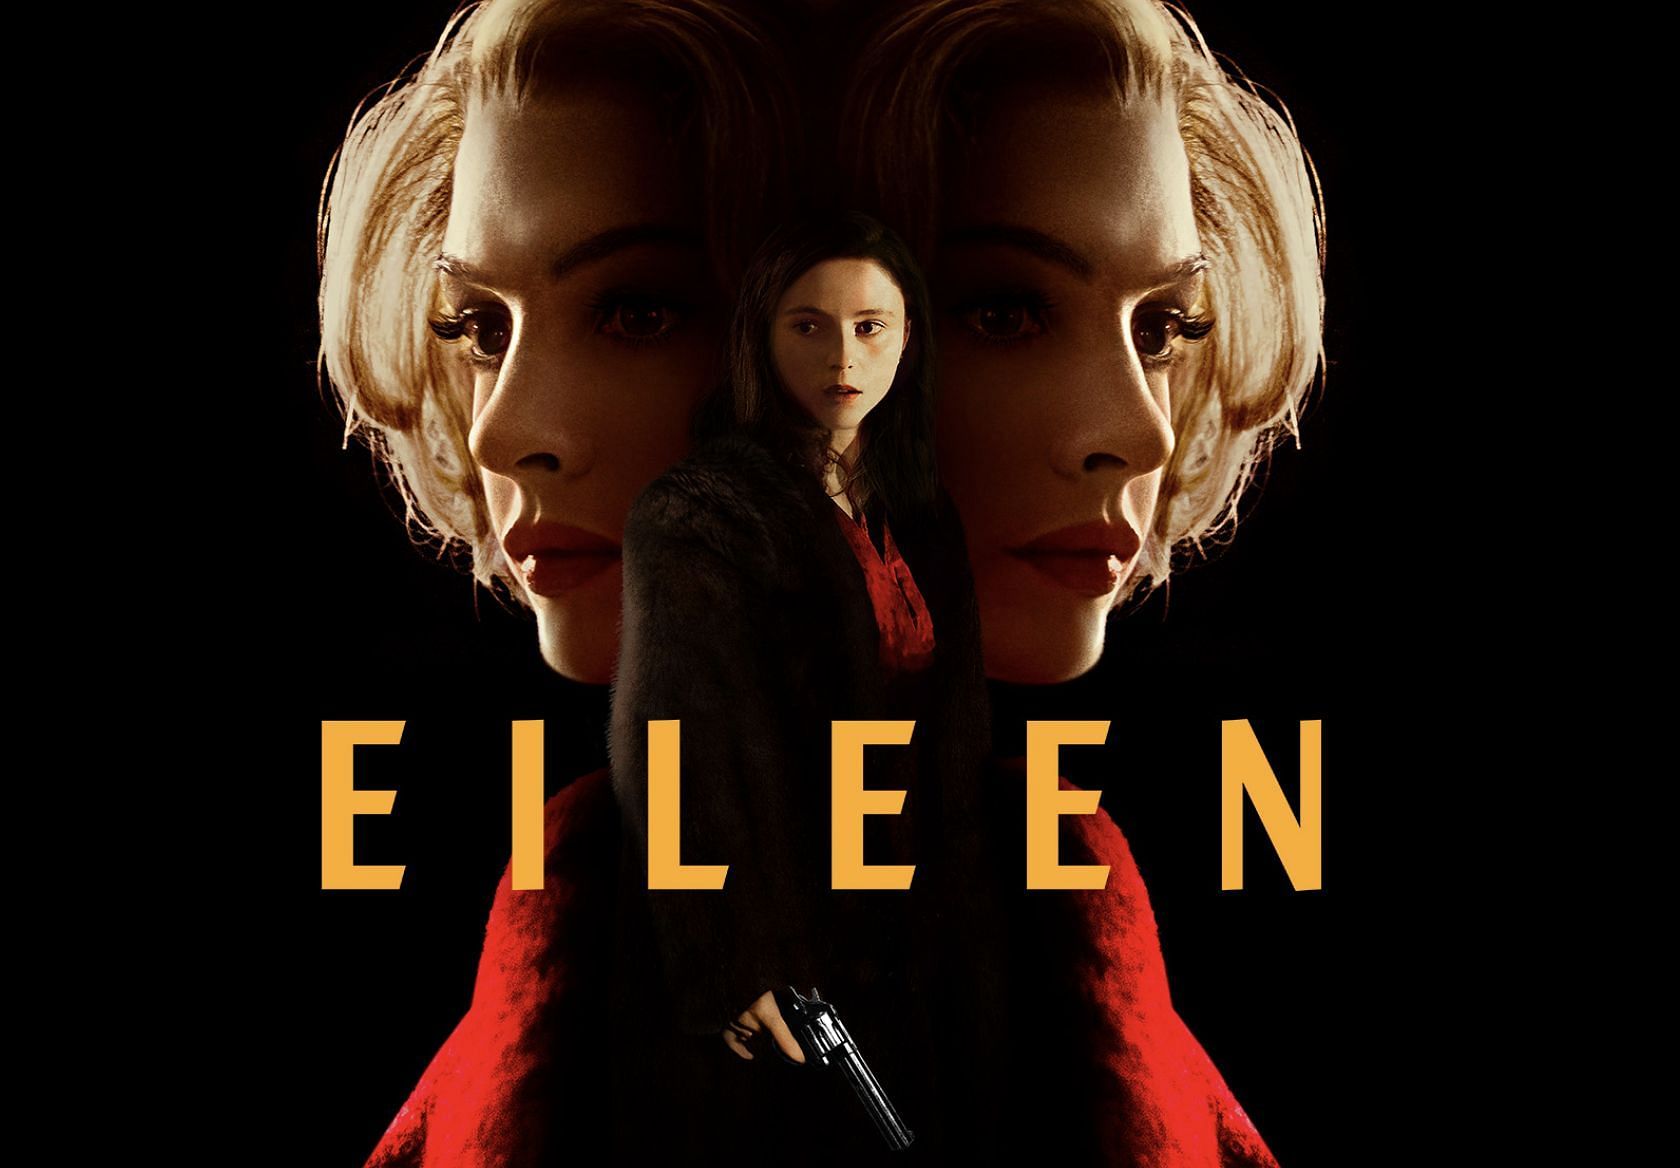 Eileen movie poster (Image via Hulu/Facebook)